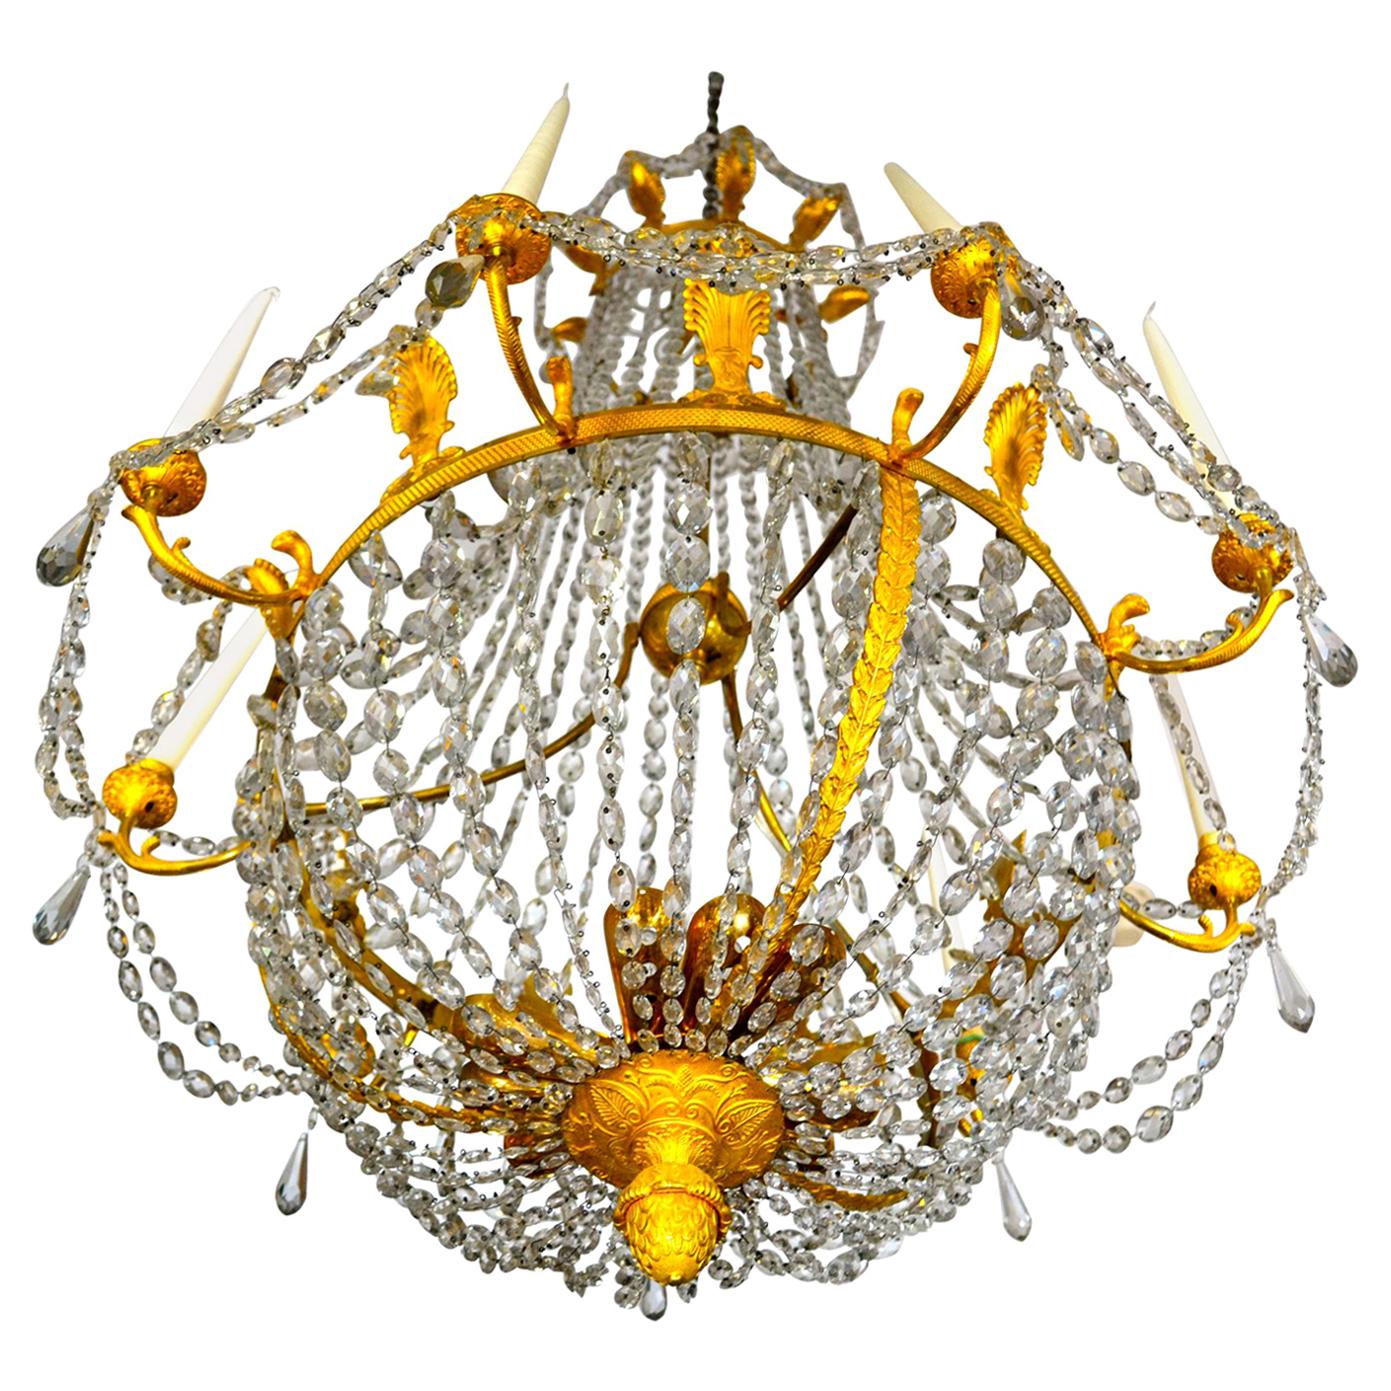 Lustre d'époque Empire français en cristal et bronze doré en forme de cloche à neuf bougies, de la plus haute qualité ; la couronne circulaire est surmontée de fleurons en forme de palmier suspendant des chaînes de cristal ondulées supportant une